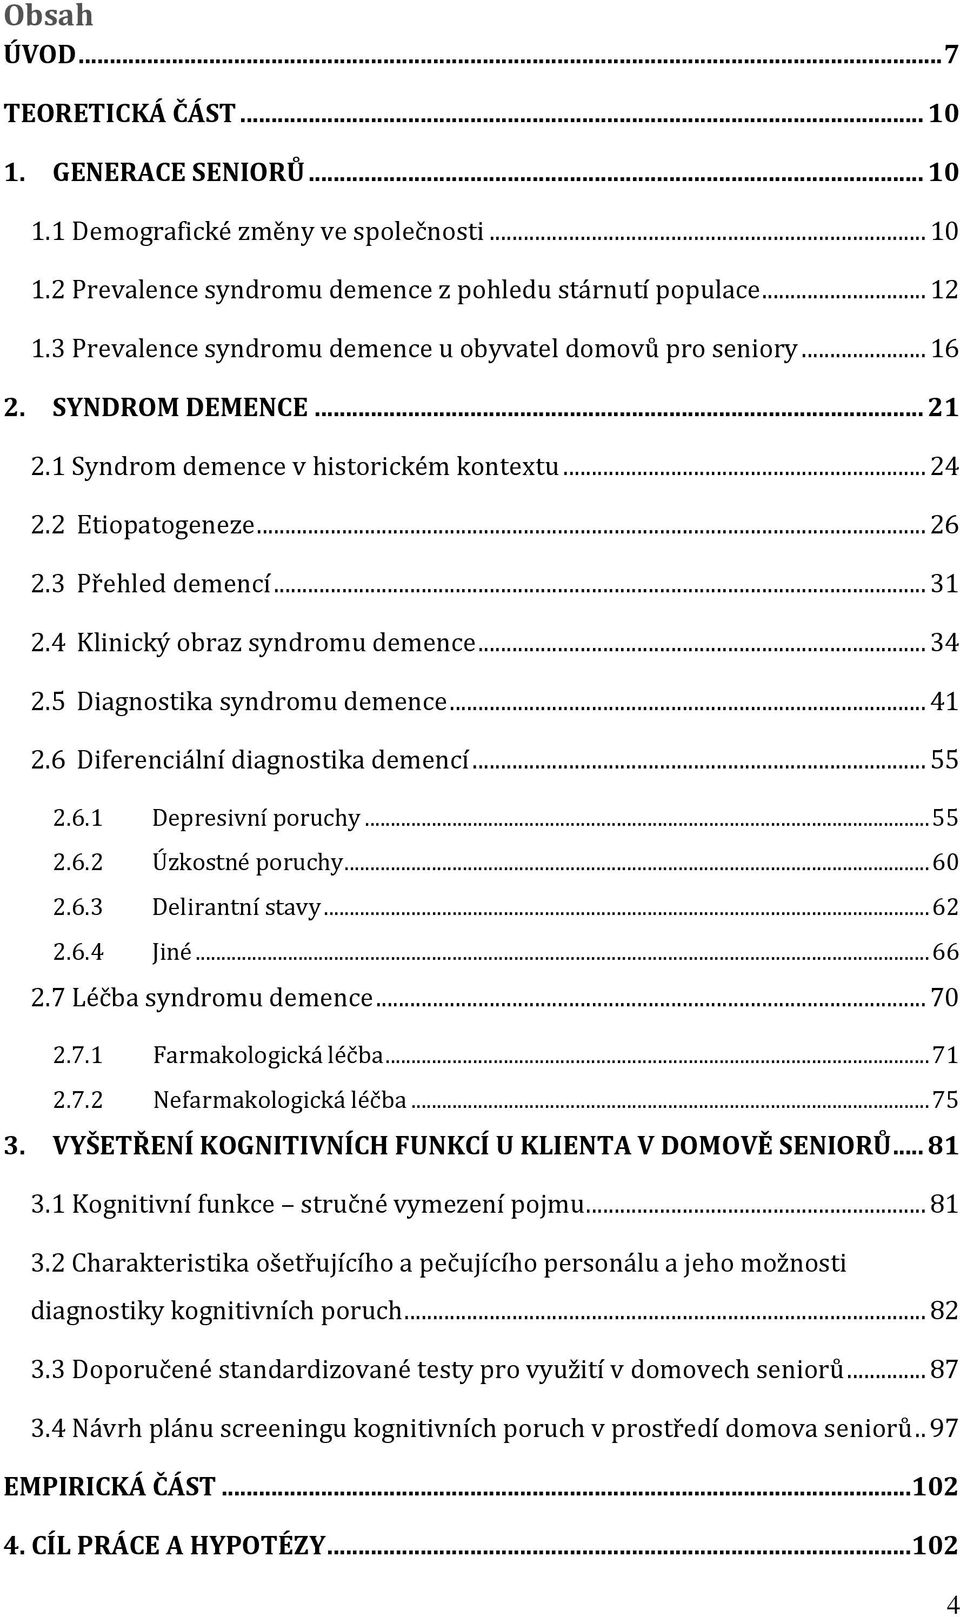 4 Klinický obraz syndromu demence... 34 2.5 Diagnostika syndromu demence... 41 2.6 Diferenciální diagnostika demencí... 55 2.6.1 Depresivní poruchy... 55 2.6.2 Úzkostné poruchy... 60 2.6.3 Delirantní stavy.